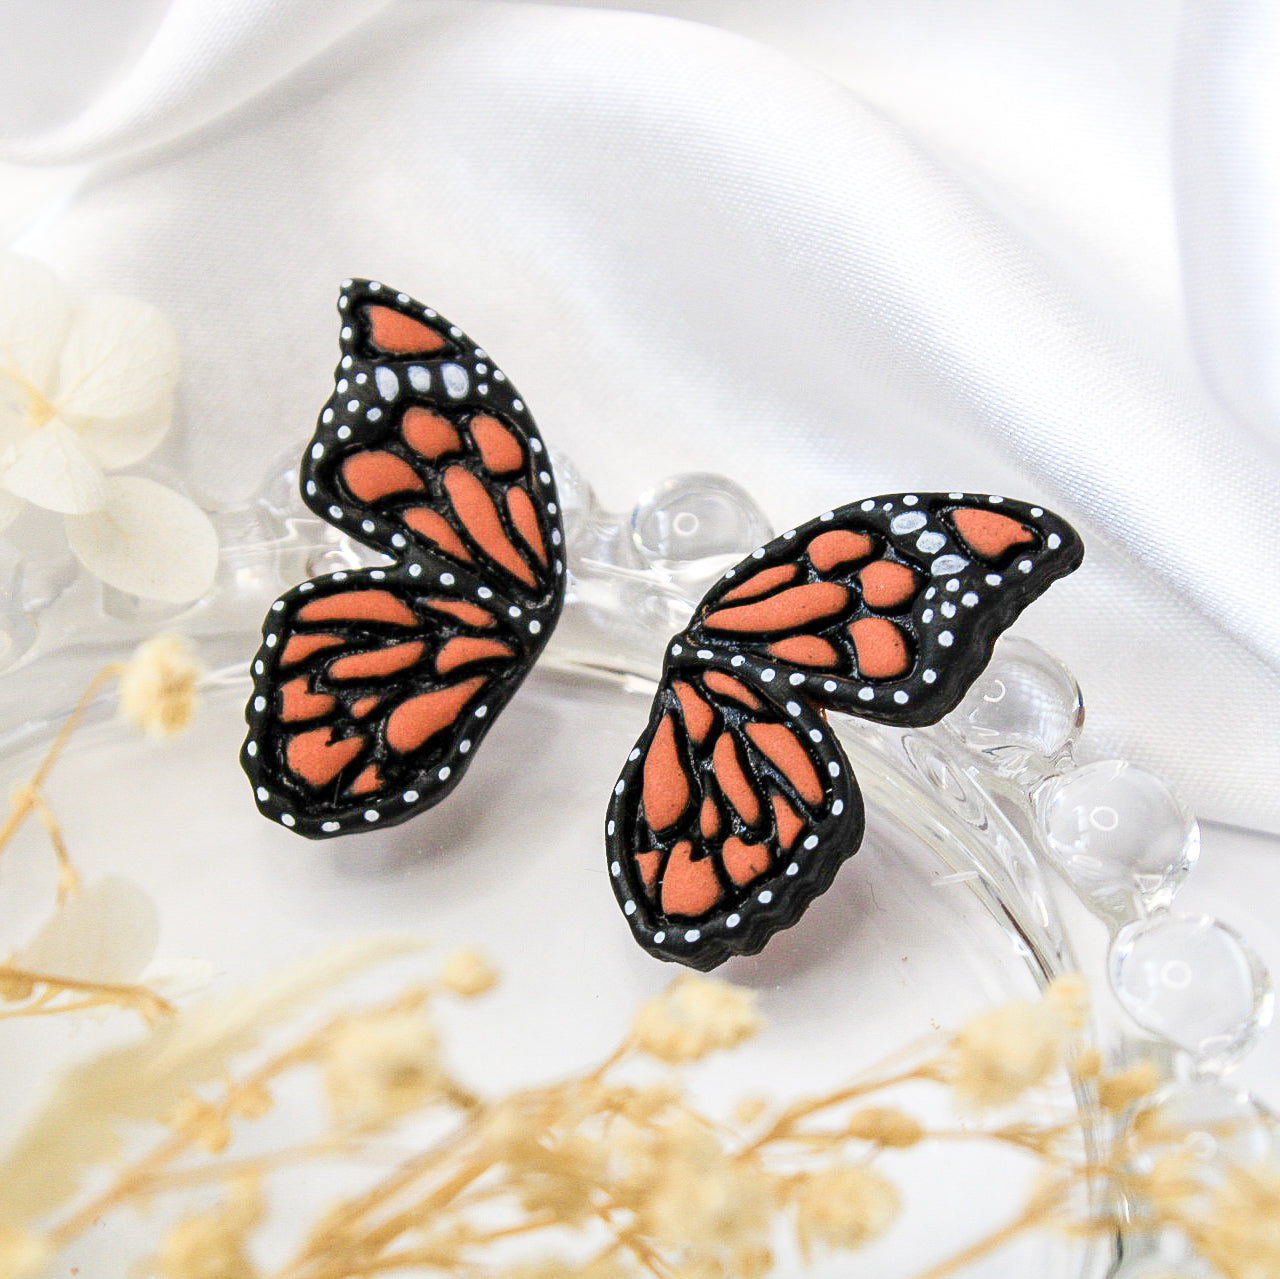 Butterfly Earrings | Quirky Earrings NZ - Arias Design Co